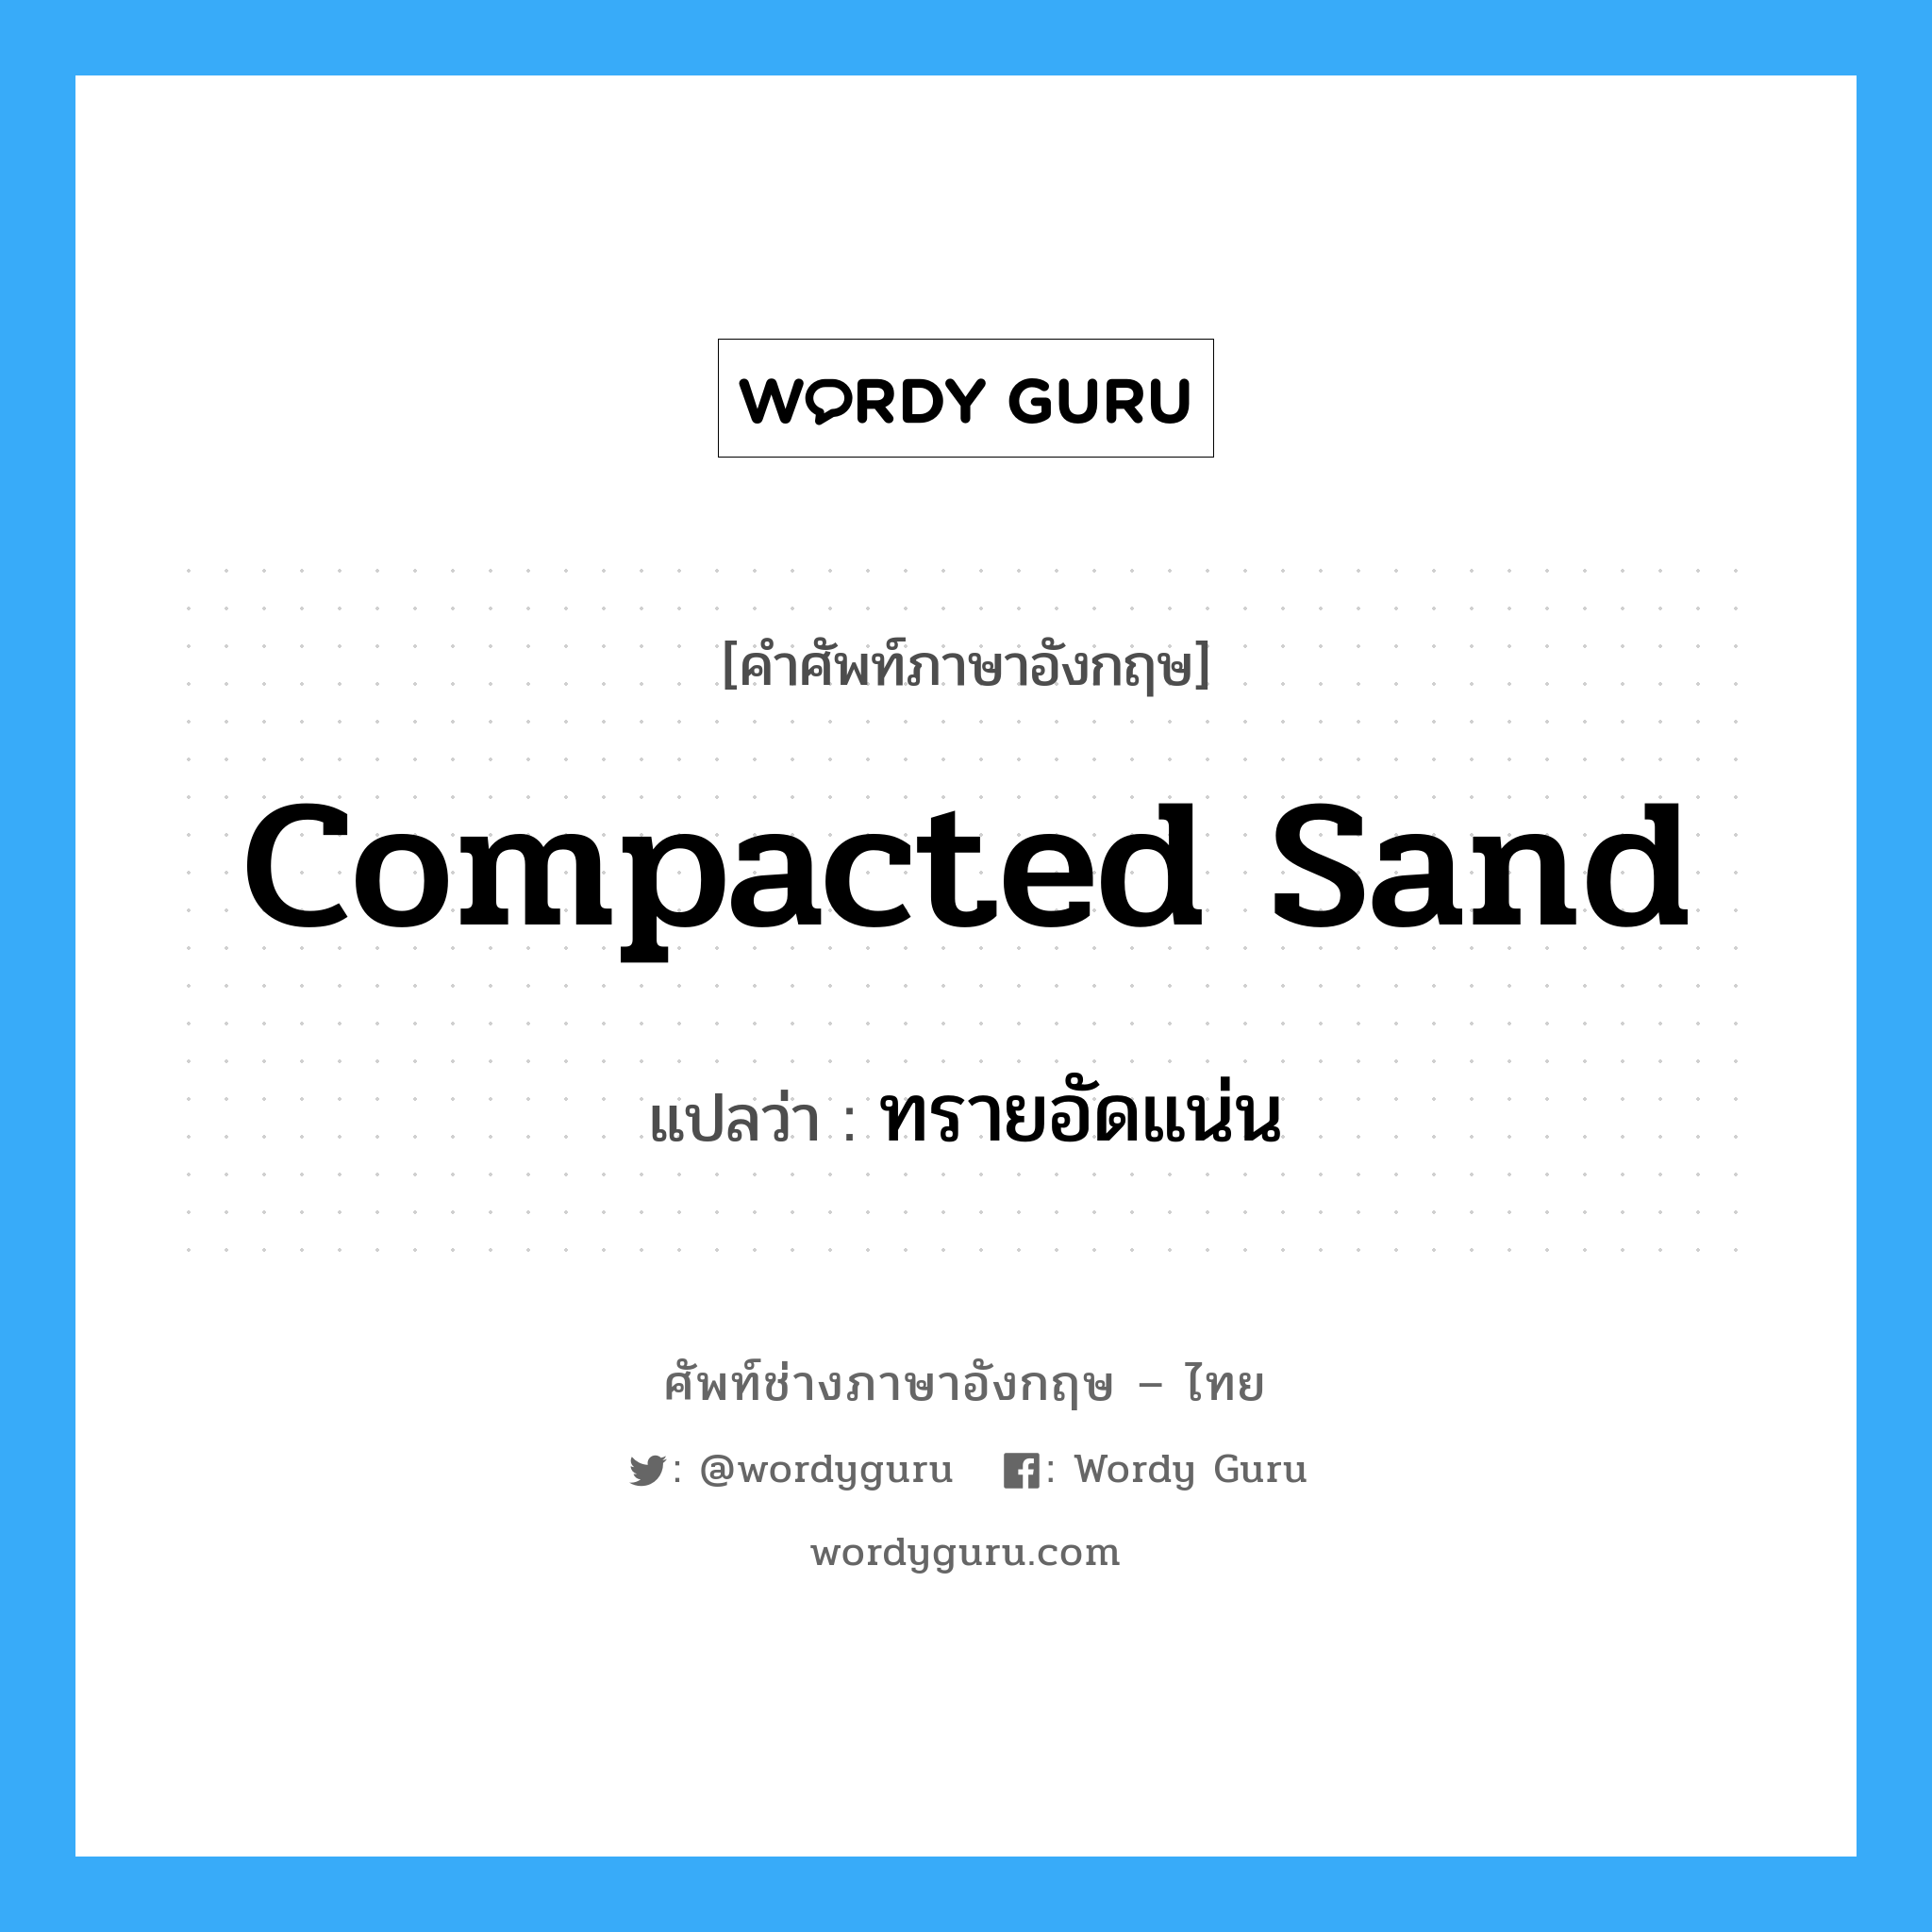 ทรายอัดแน่น ภาษาอังกฤษ?, คำศัพท์ช่างภาษาอังกฤษ - ไทย ทรายอัดแน่น คำศัพท์ภาษาอังกฤษ ทรายอัดแน่น แปลว่า compacted sand